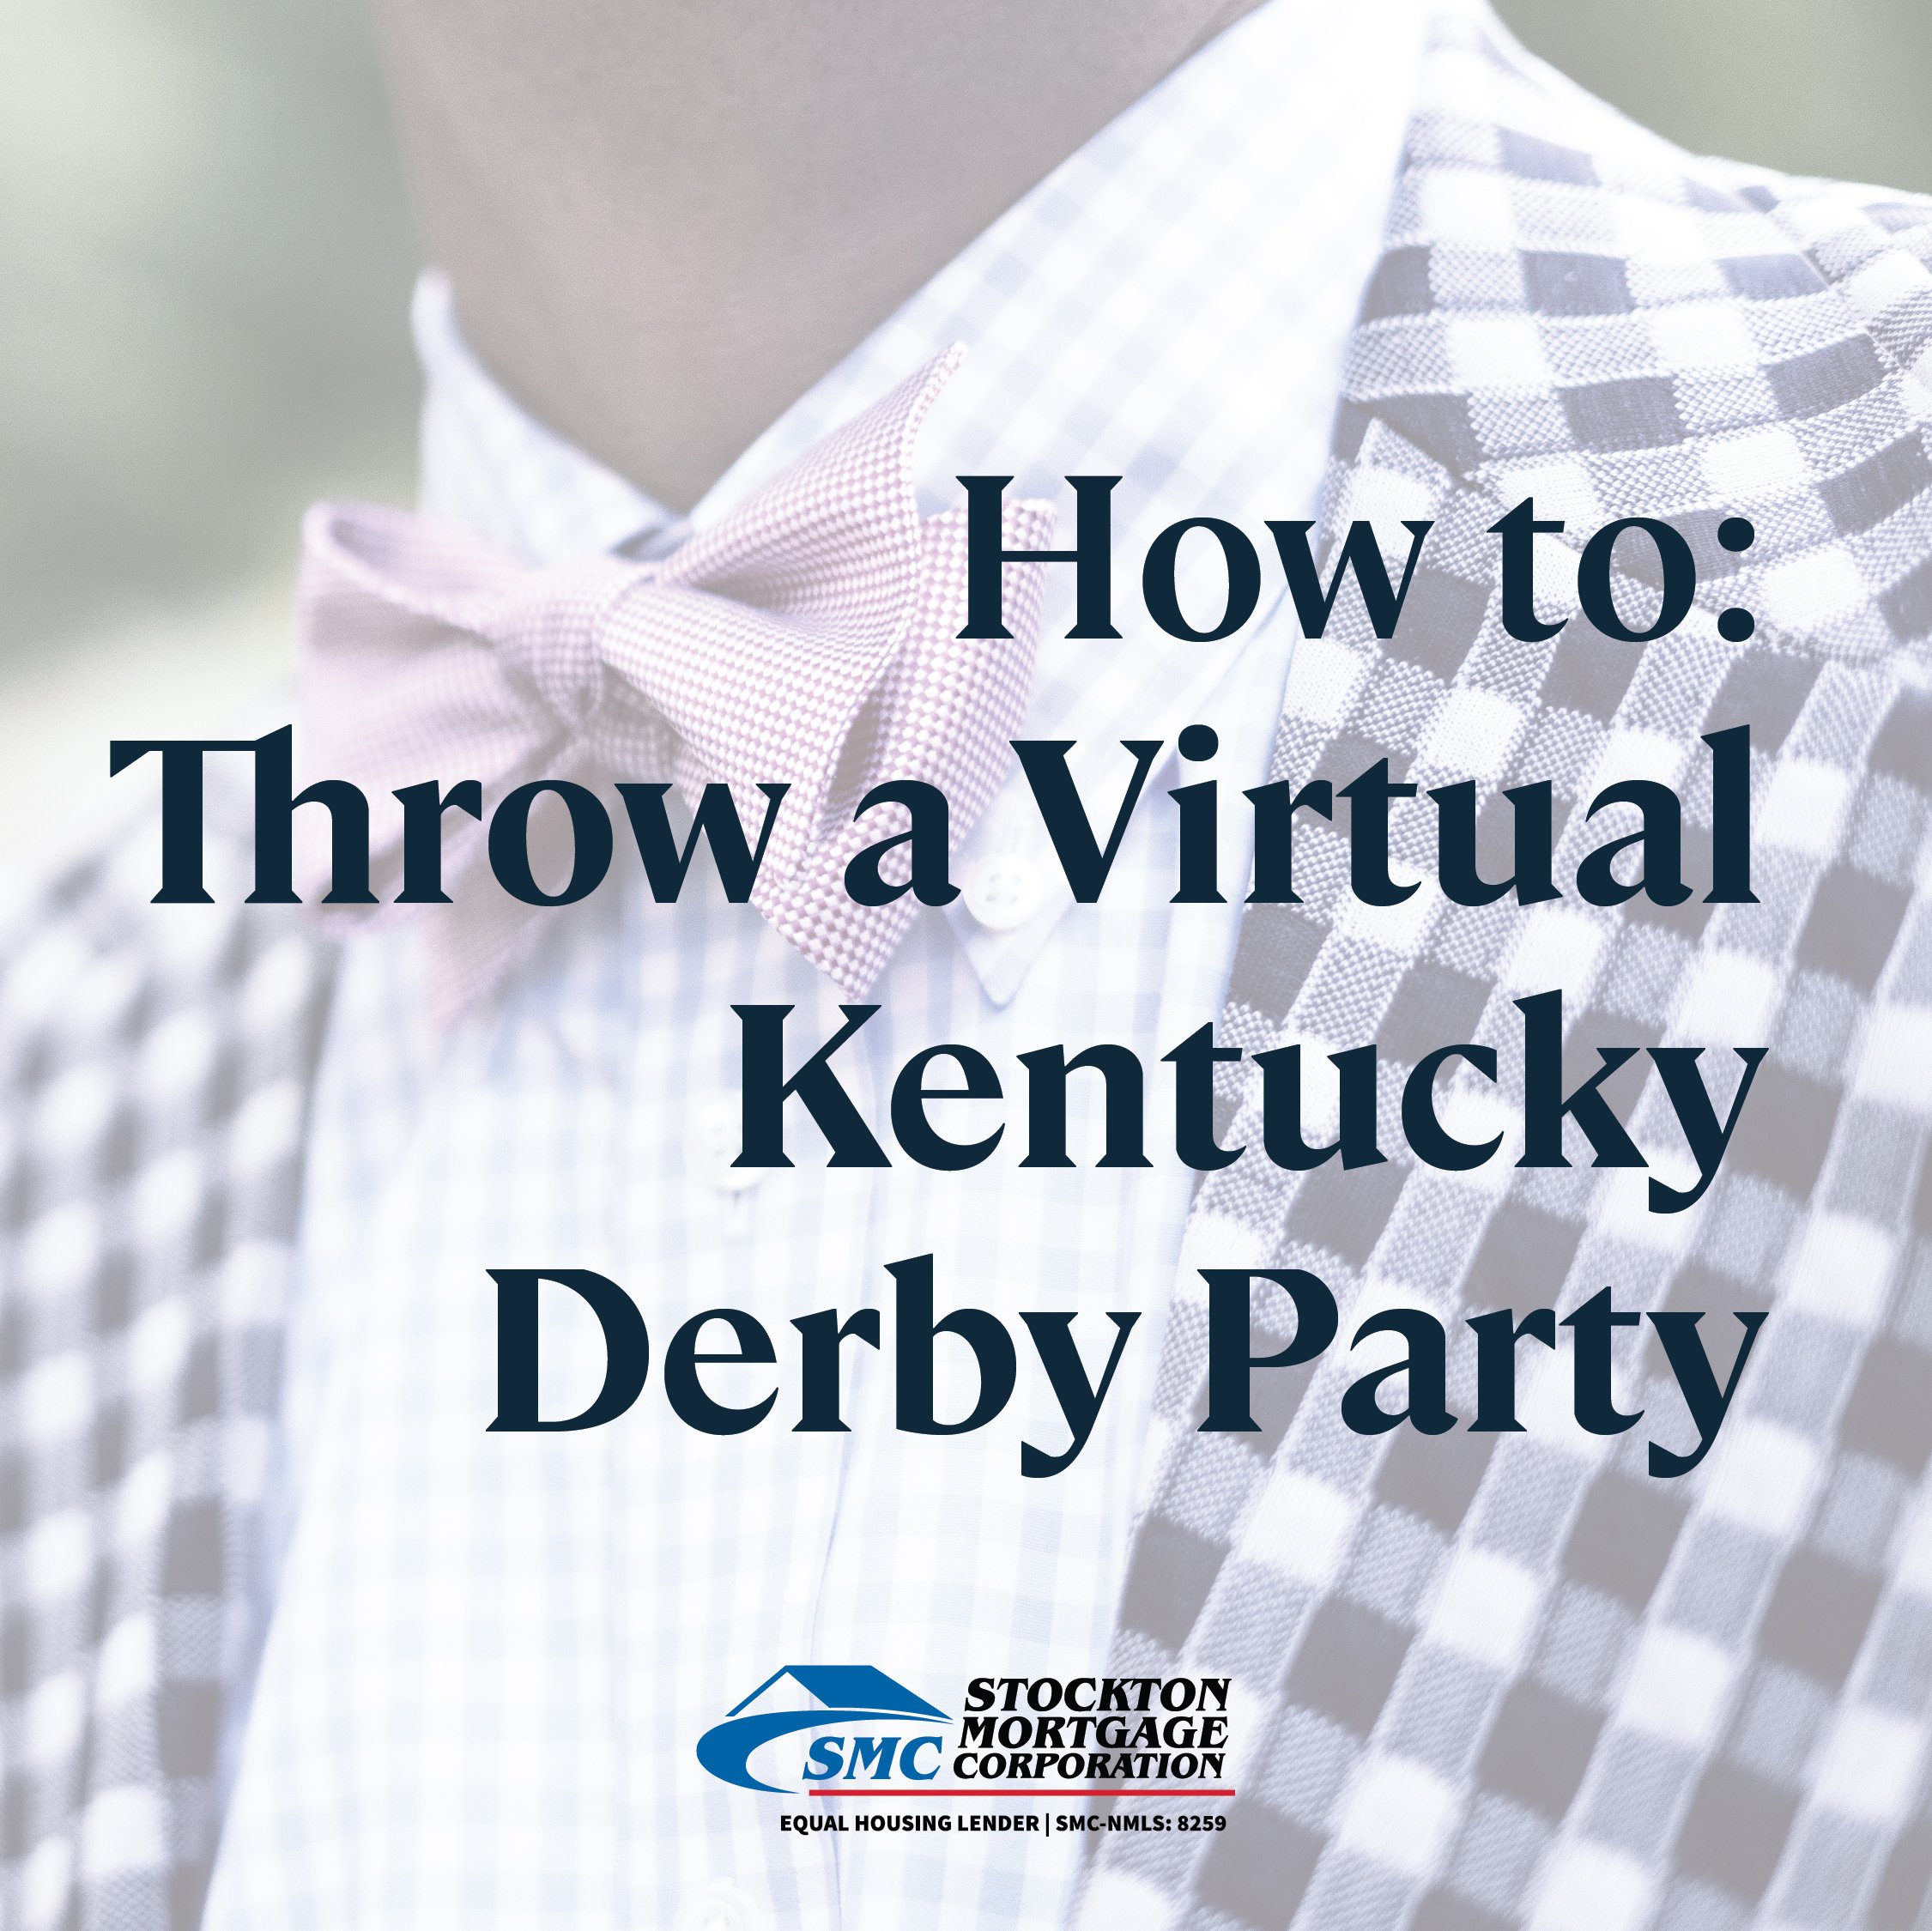 Throw a Virtual Kentucky Derby Party